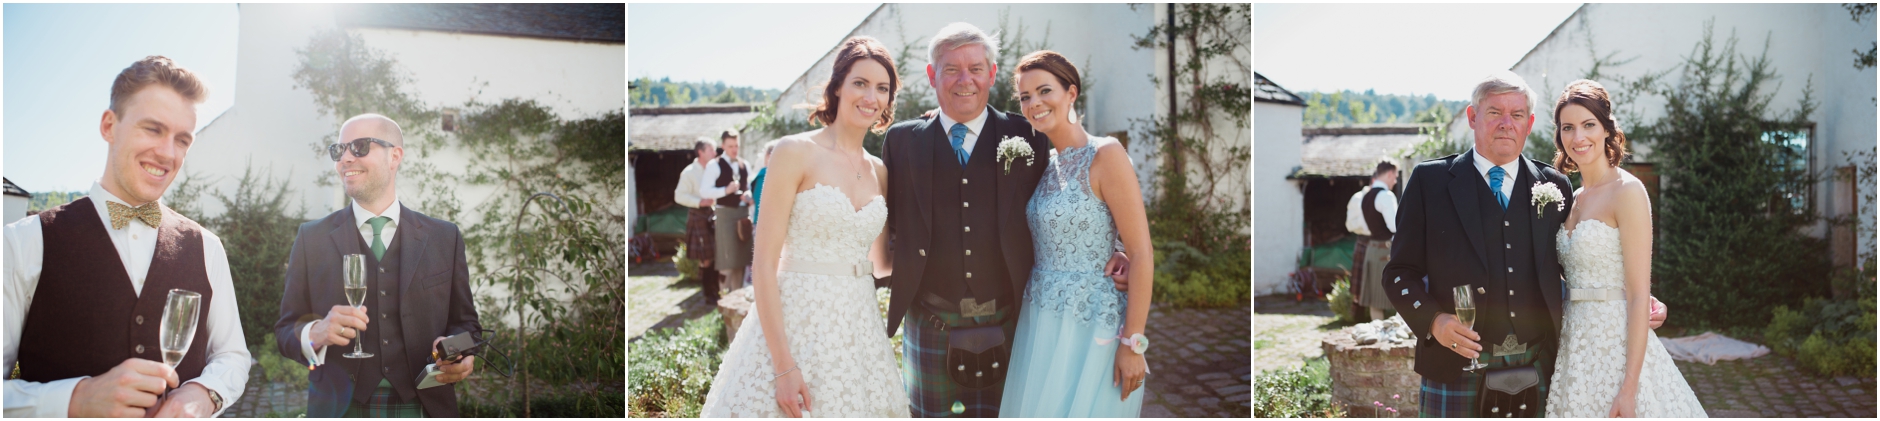 ntry house wedding photographer aberdeen highlands